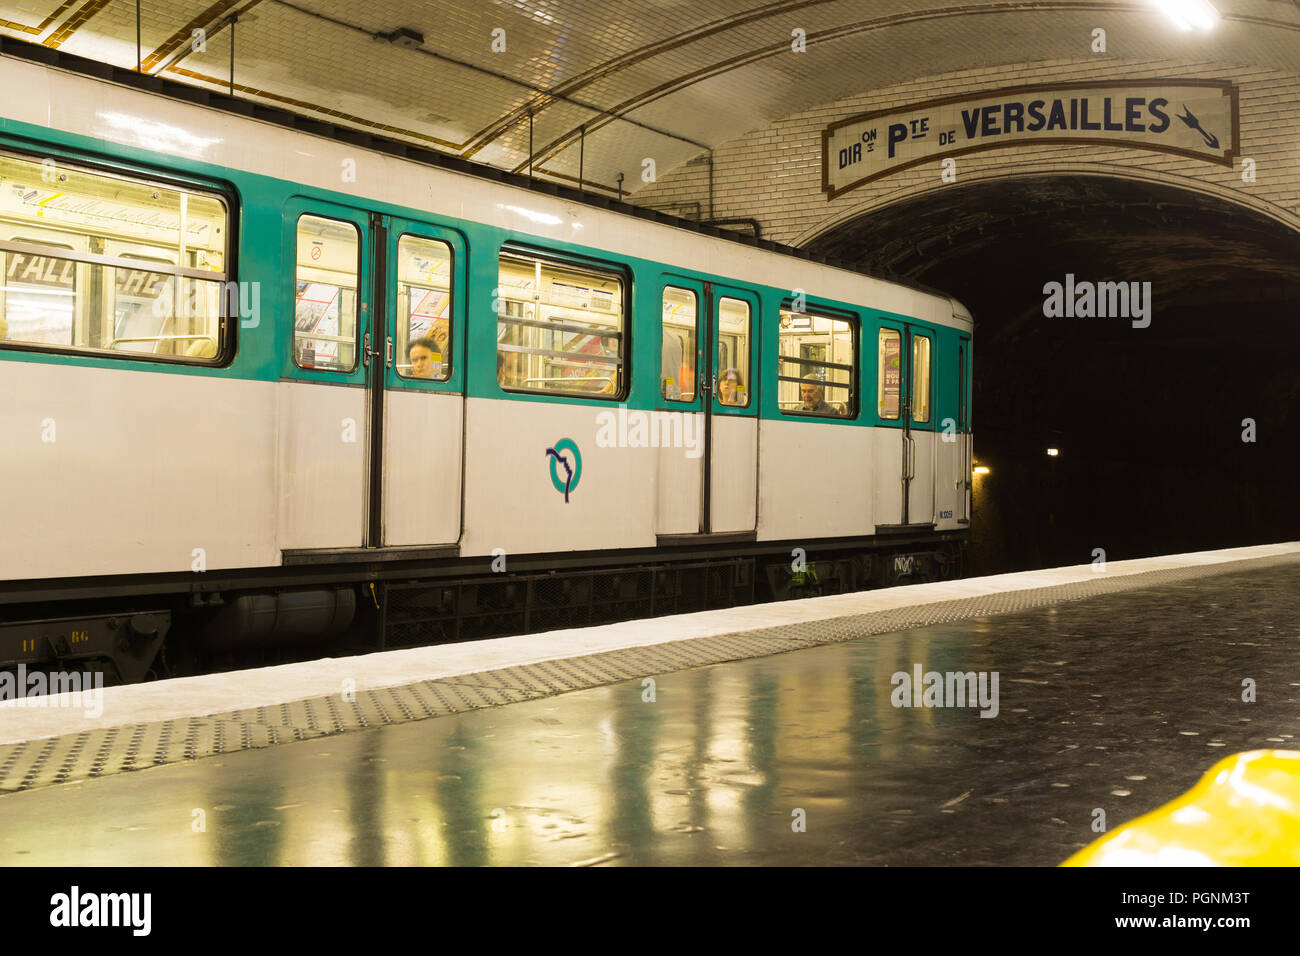 Pariser Metro - alte U-Bahn an der Station in Paris, Frankreich, Europa stoppen. Stockfoto